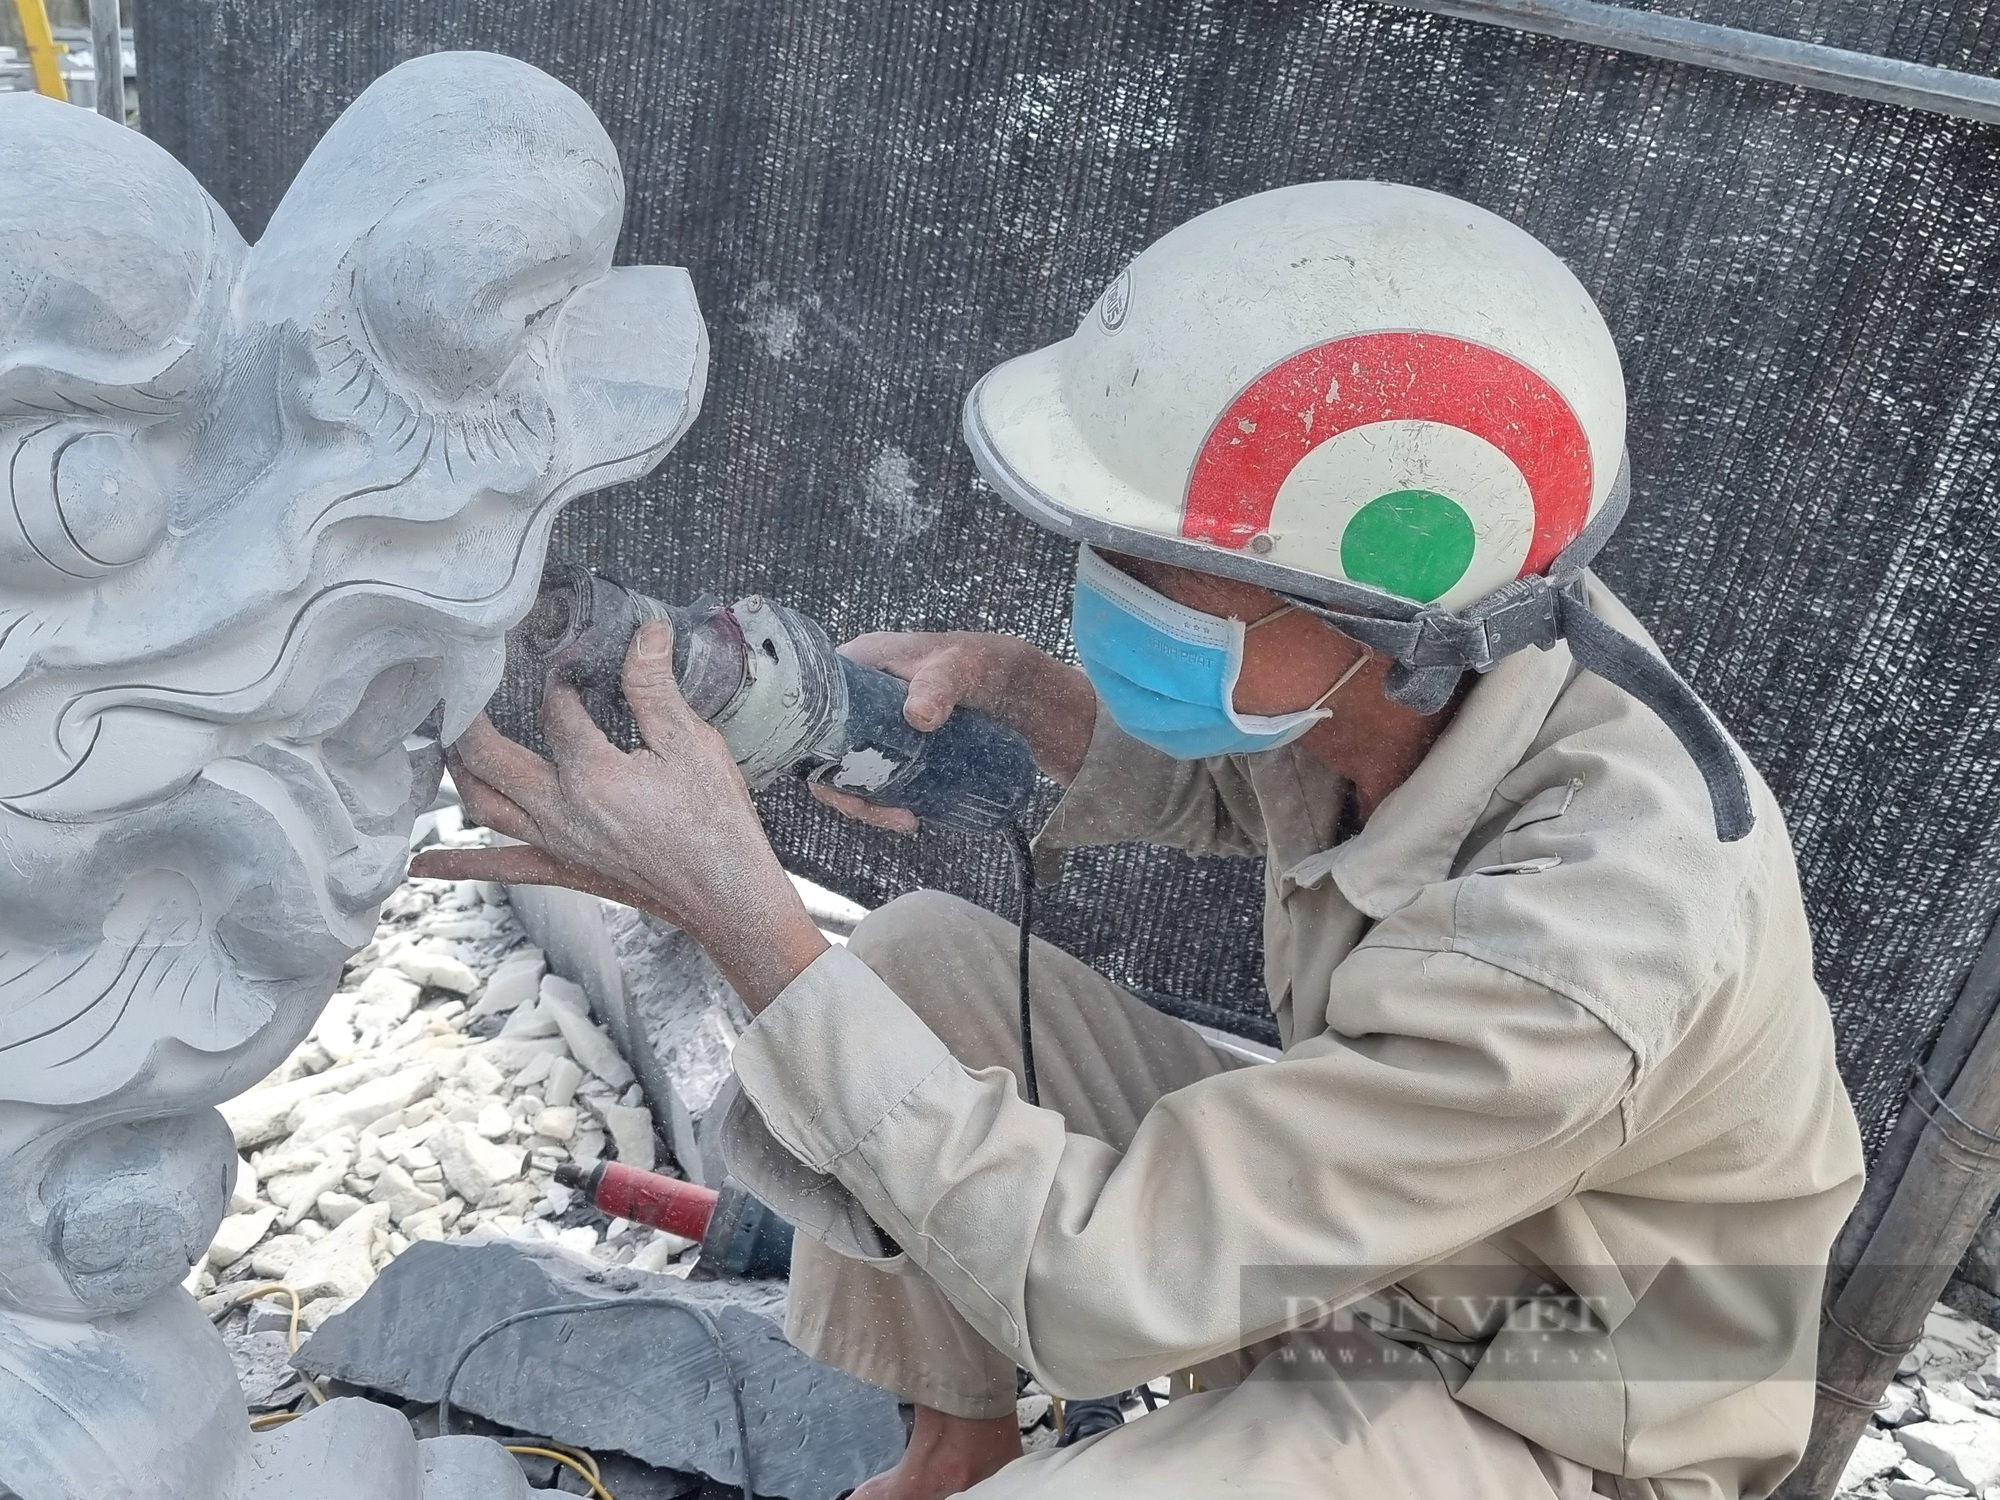 Ninh Bình: Cận cảnh nghề chế tác đá mỹ nghệ ở ngoài trời gần 40 độ C - Ảnh 4.